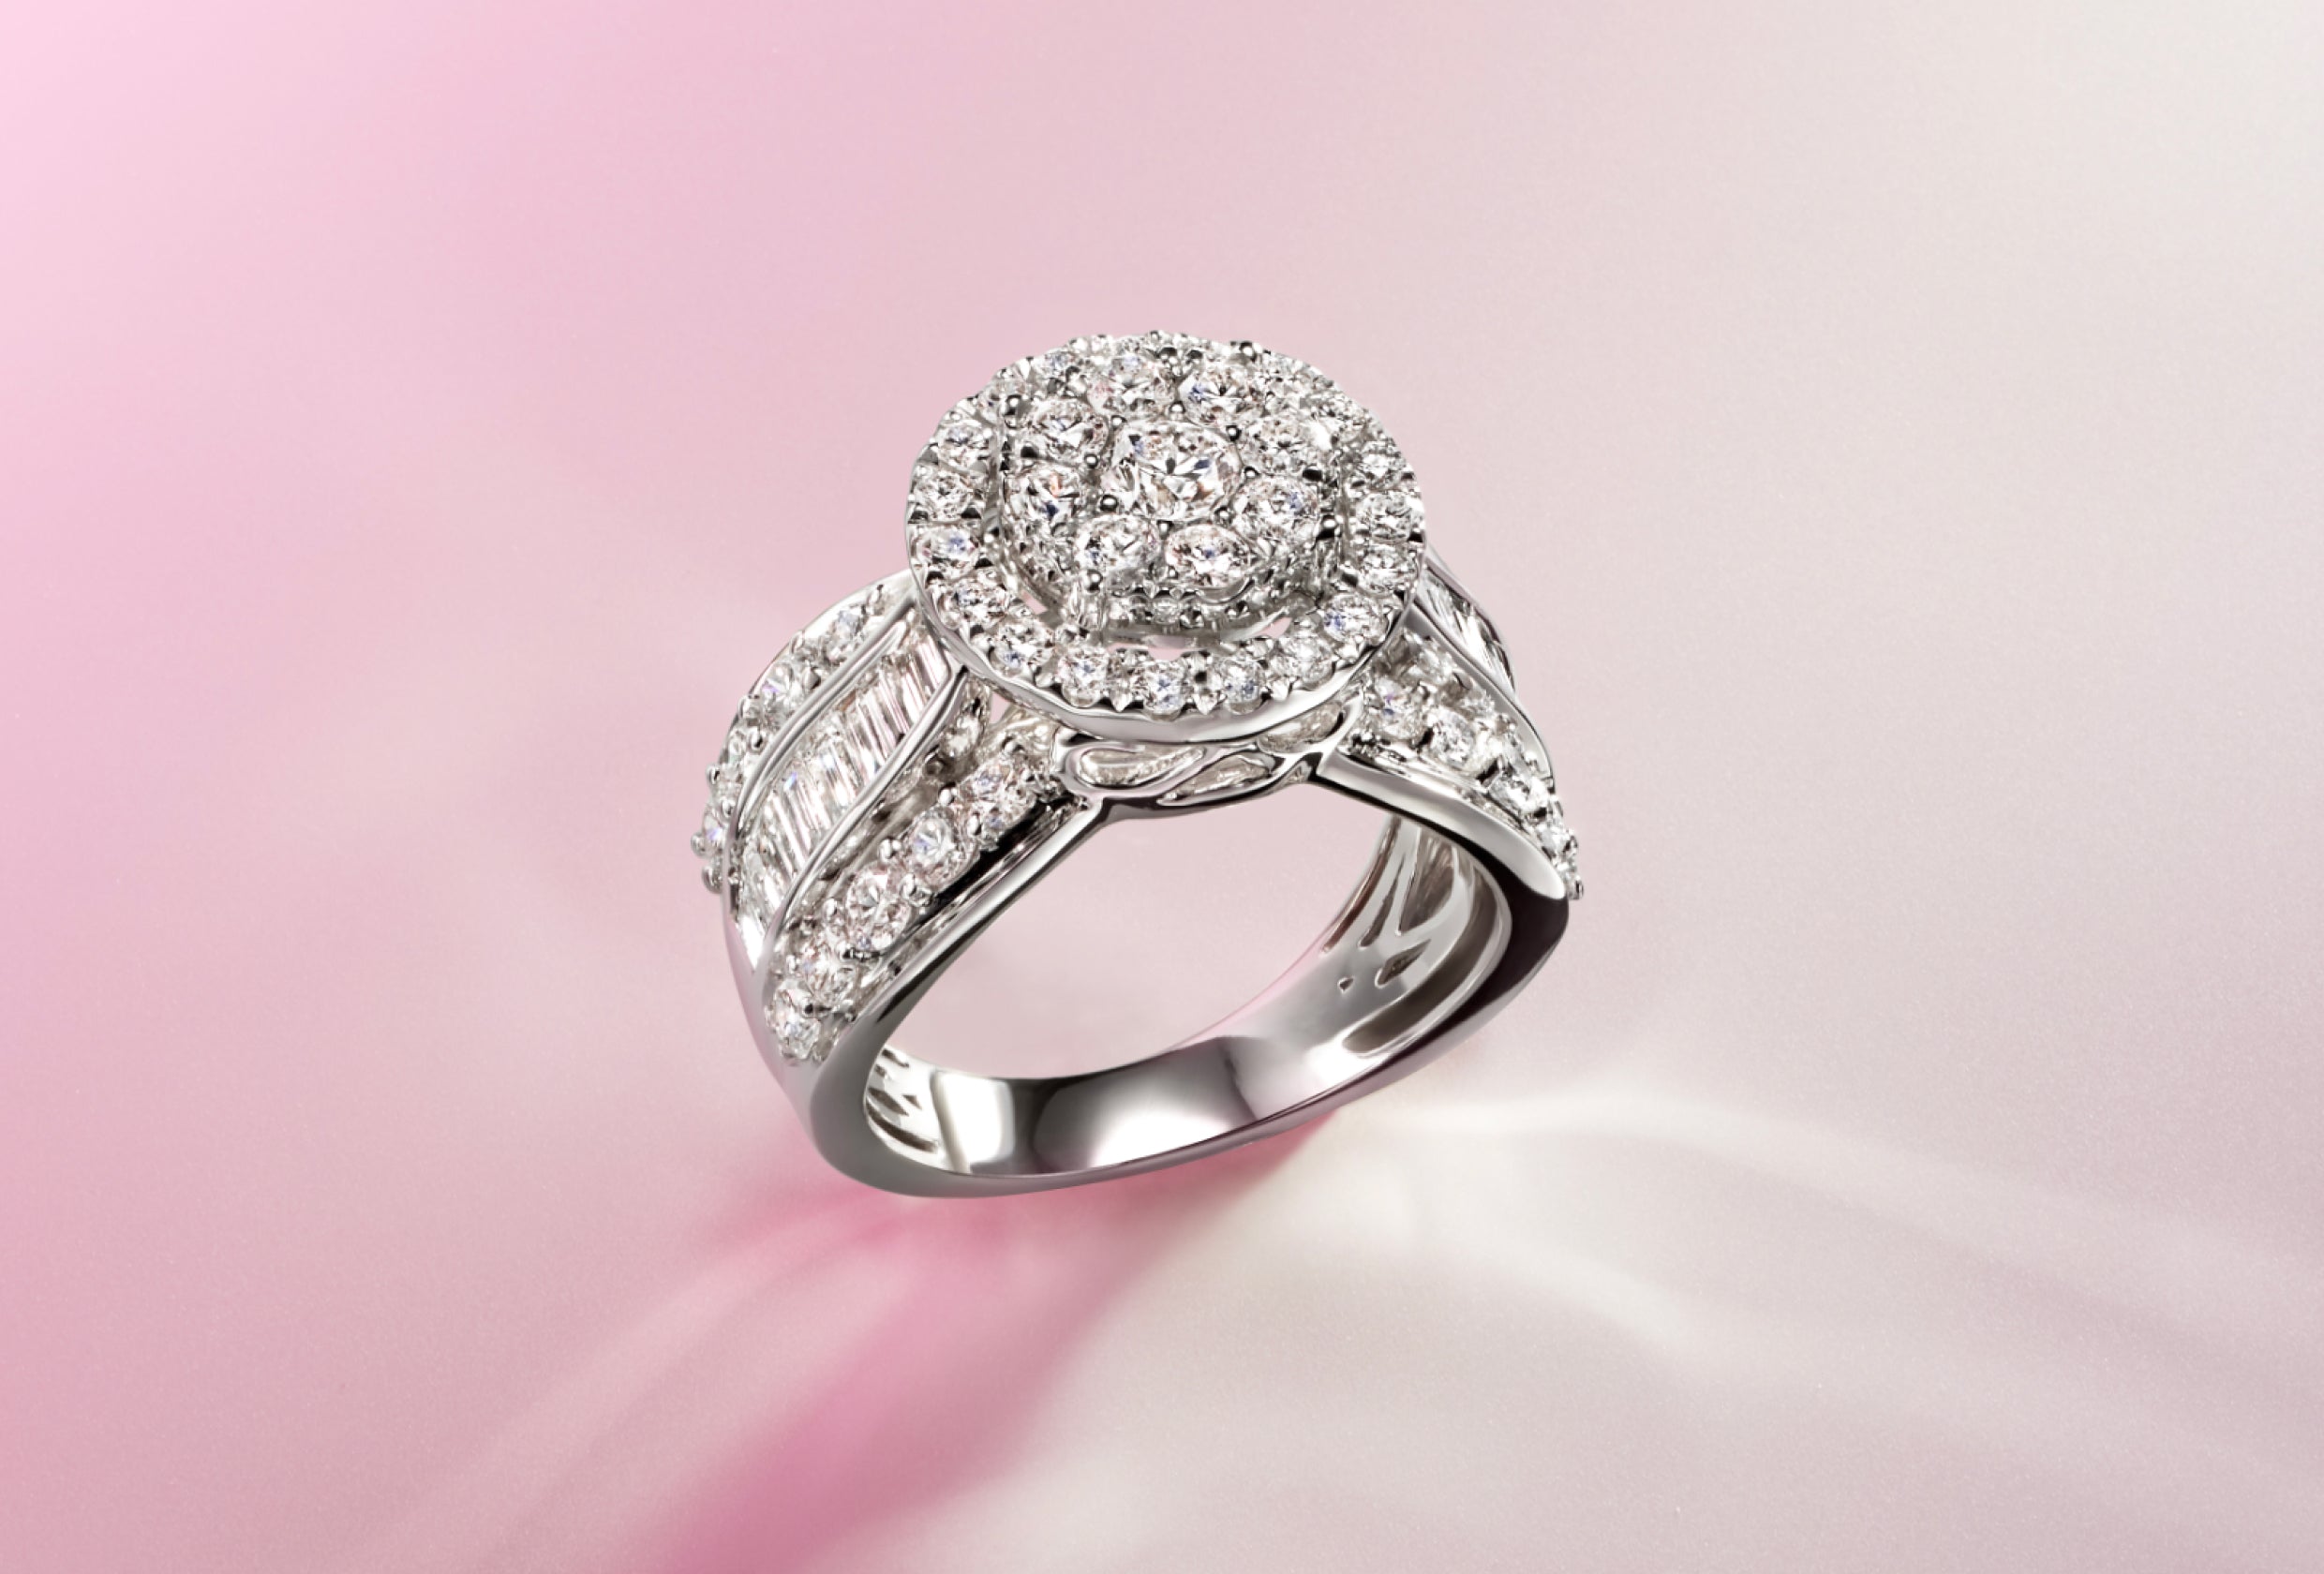 Effy Jewelry – effyjewelry.com